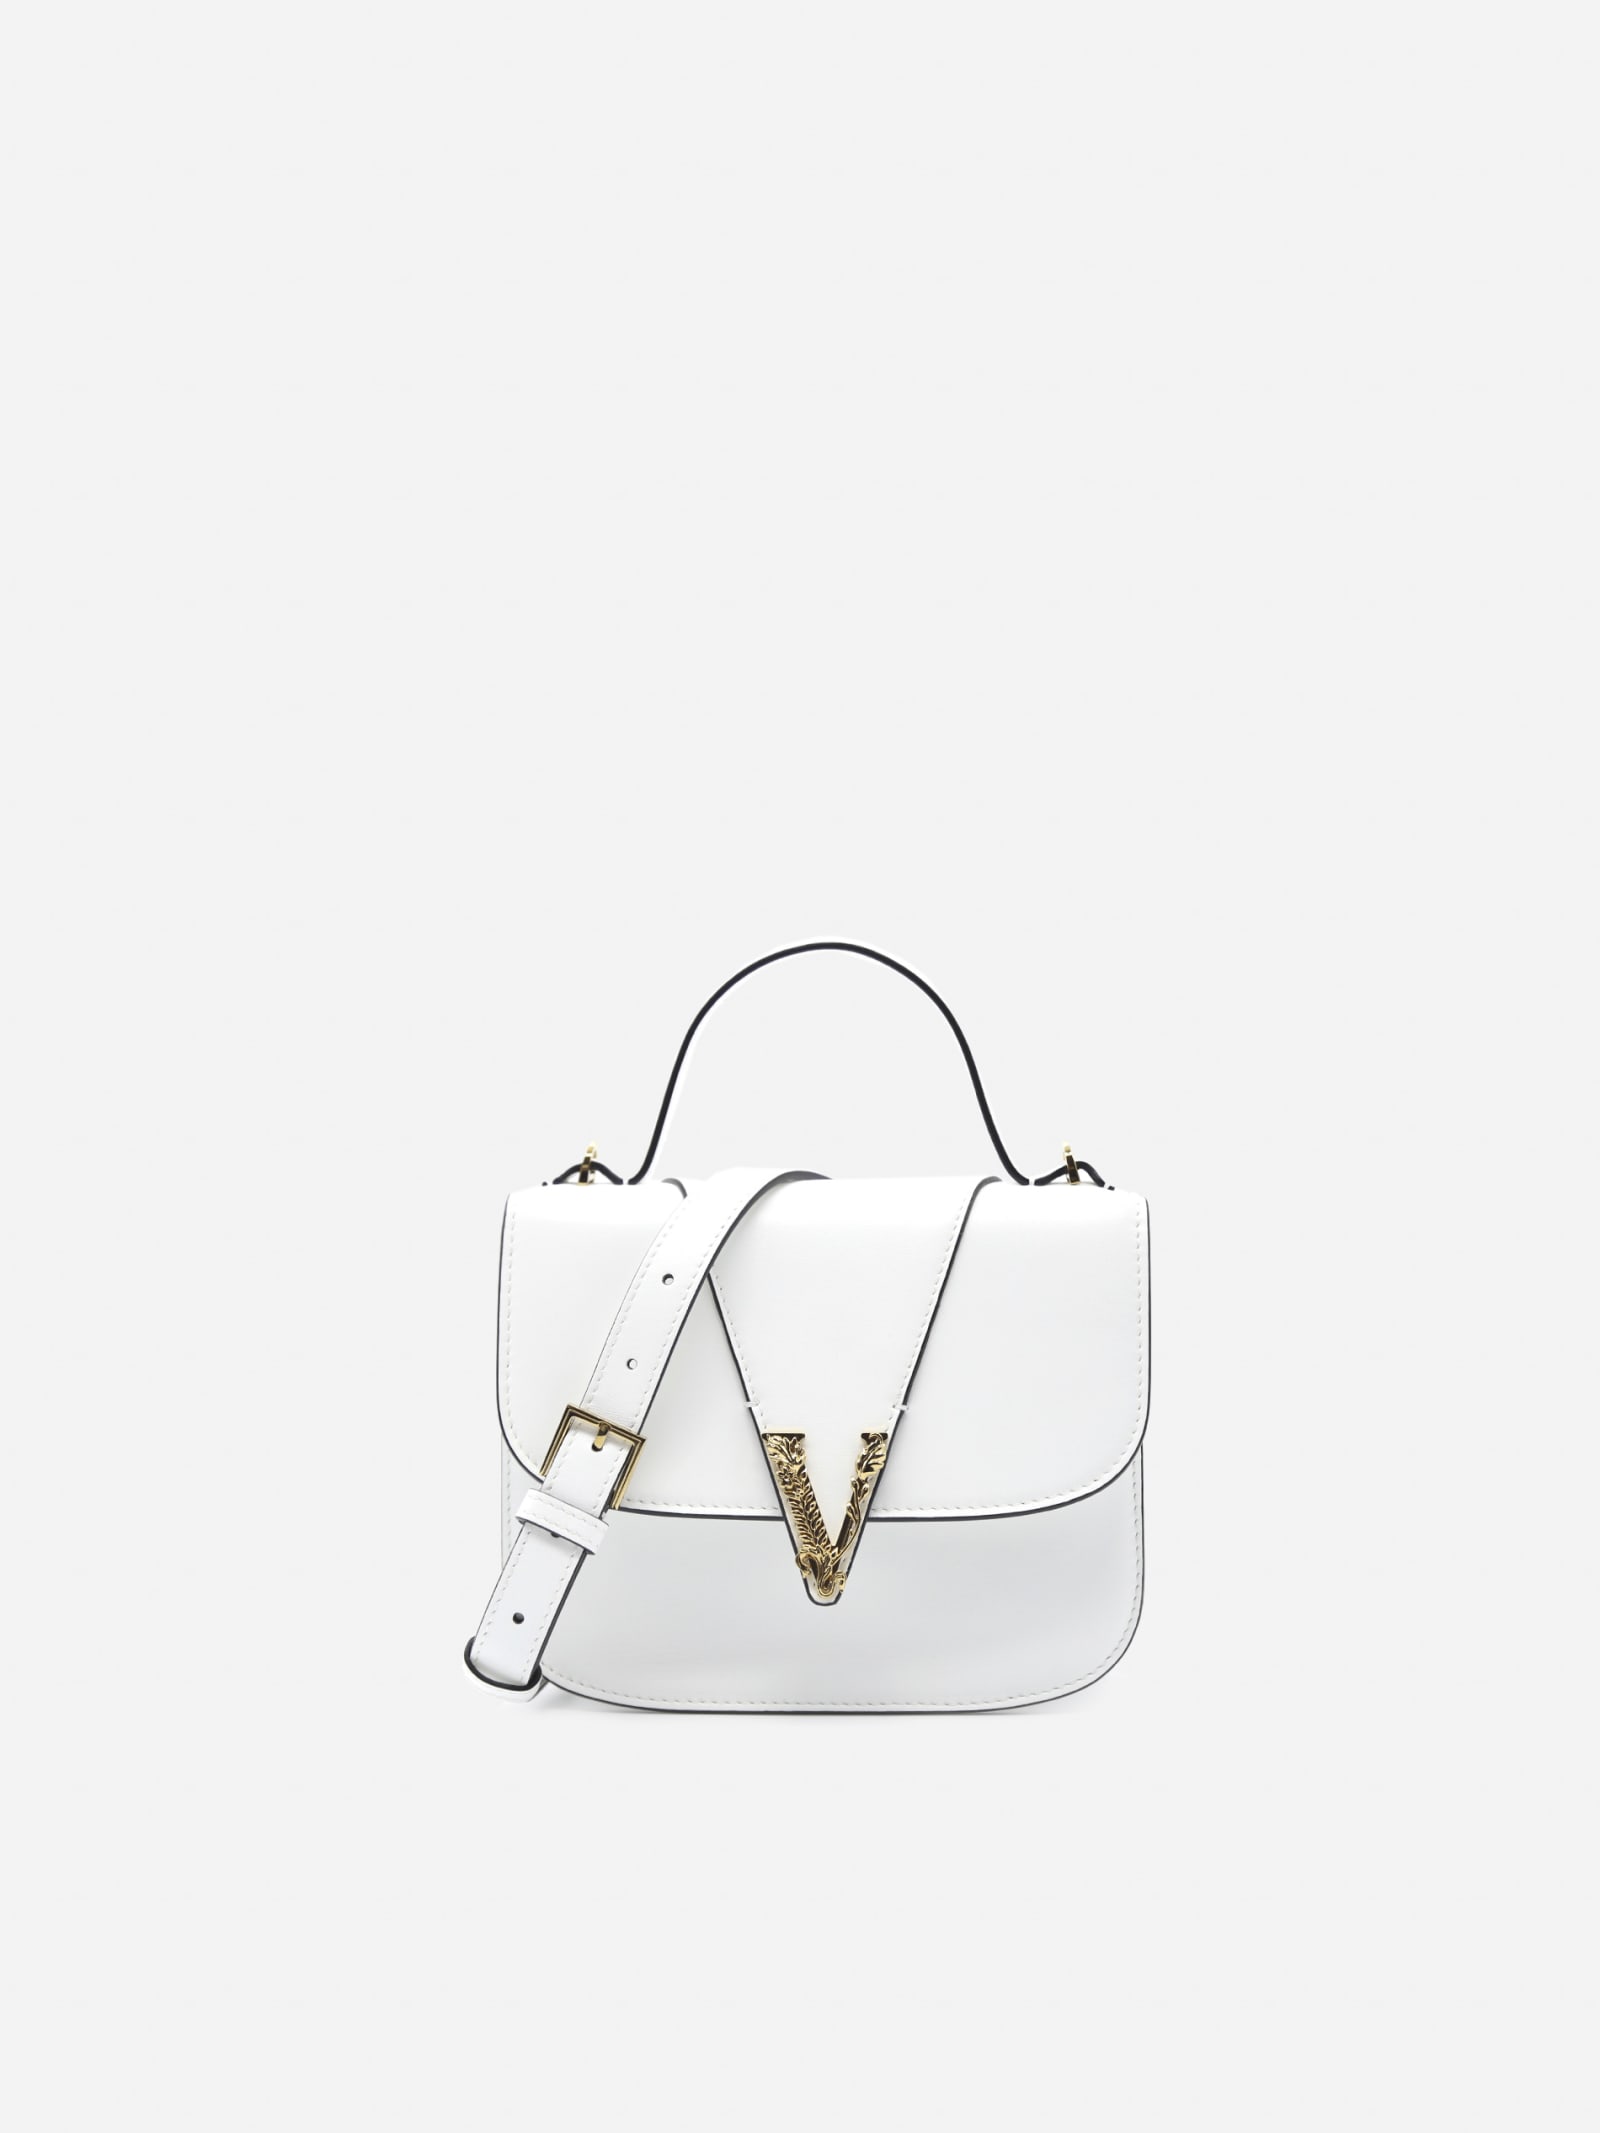 Versace Virtus Small Leather Bag